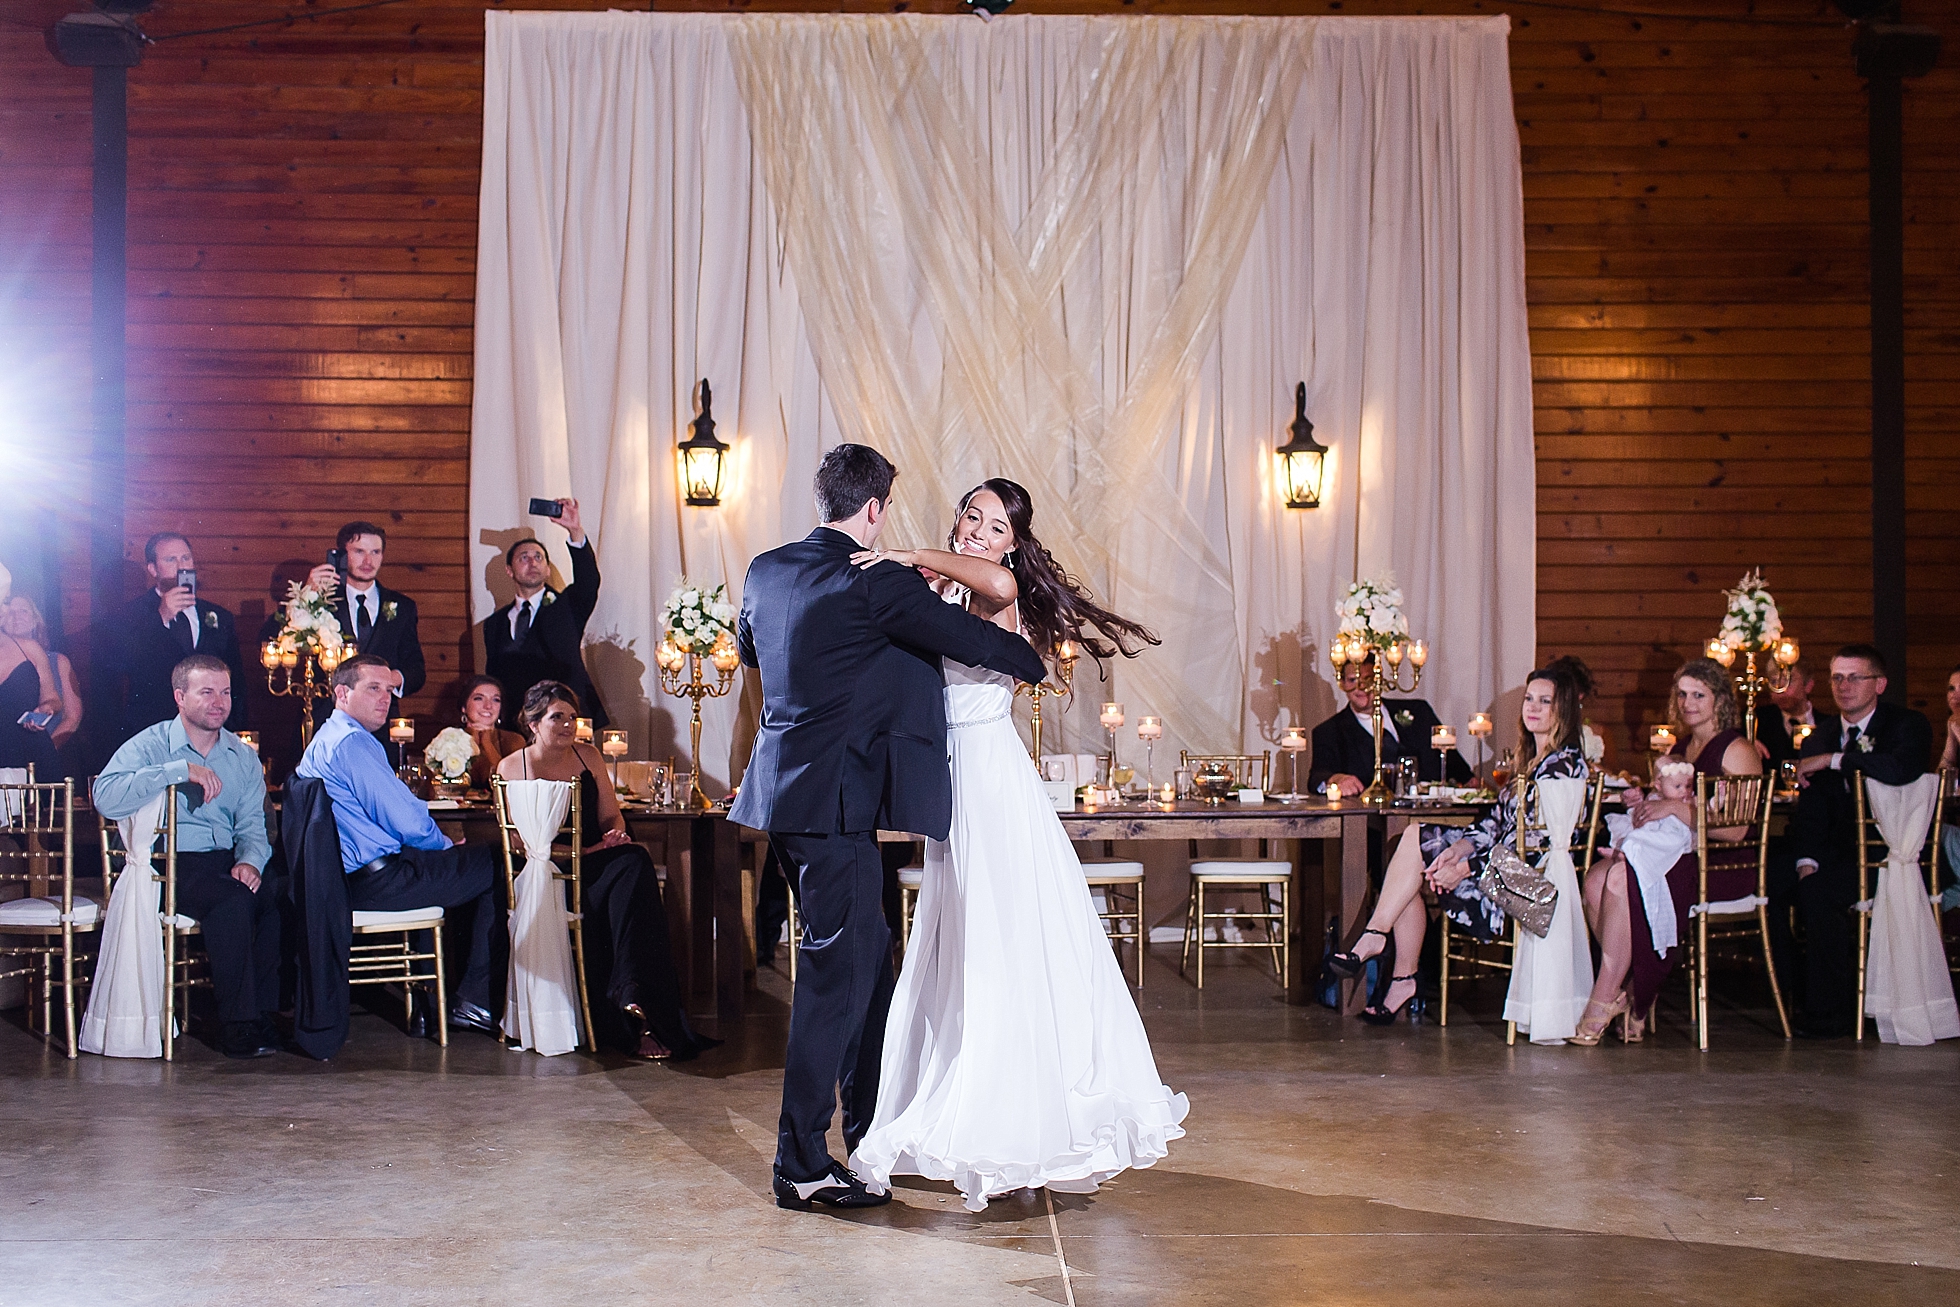 ballroom dancing wedding photos